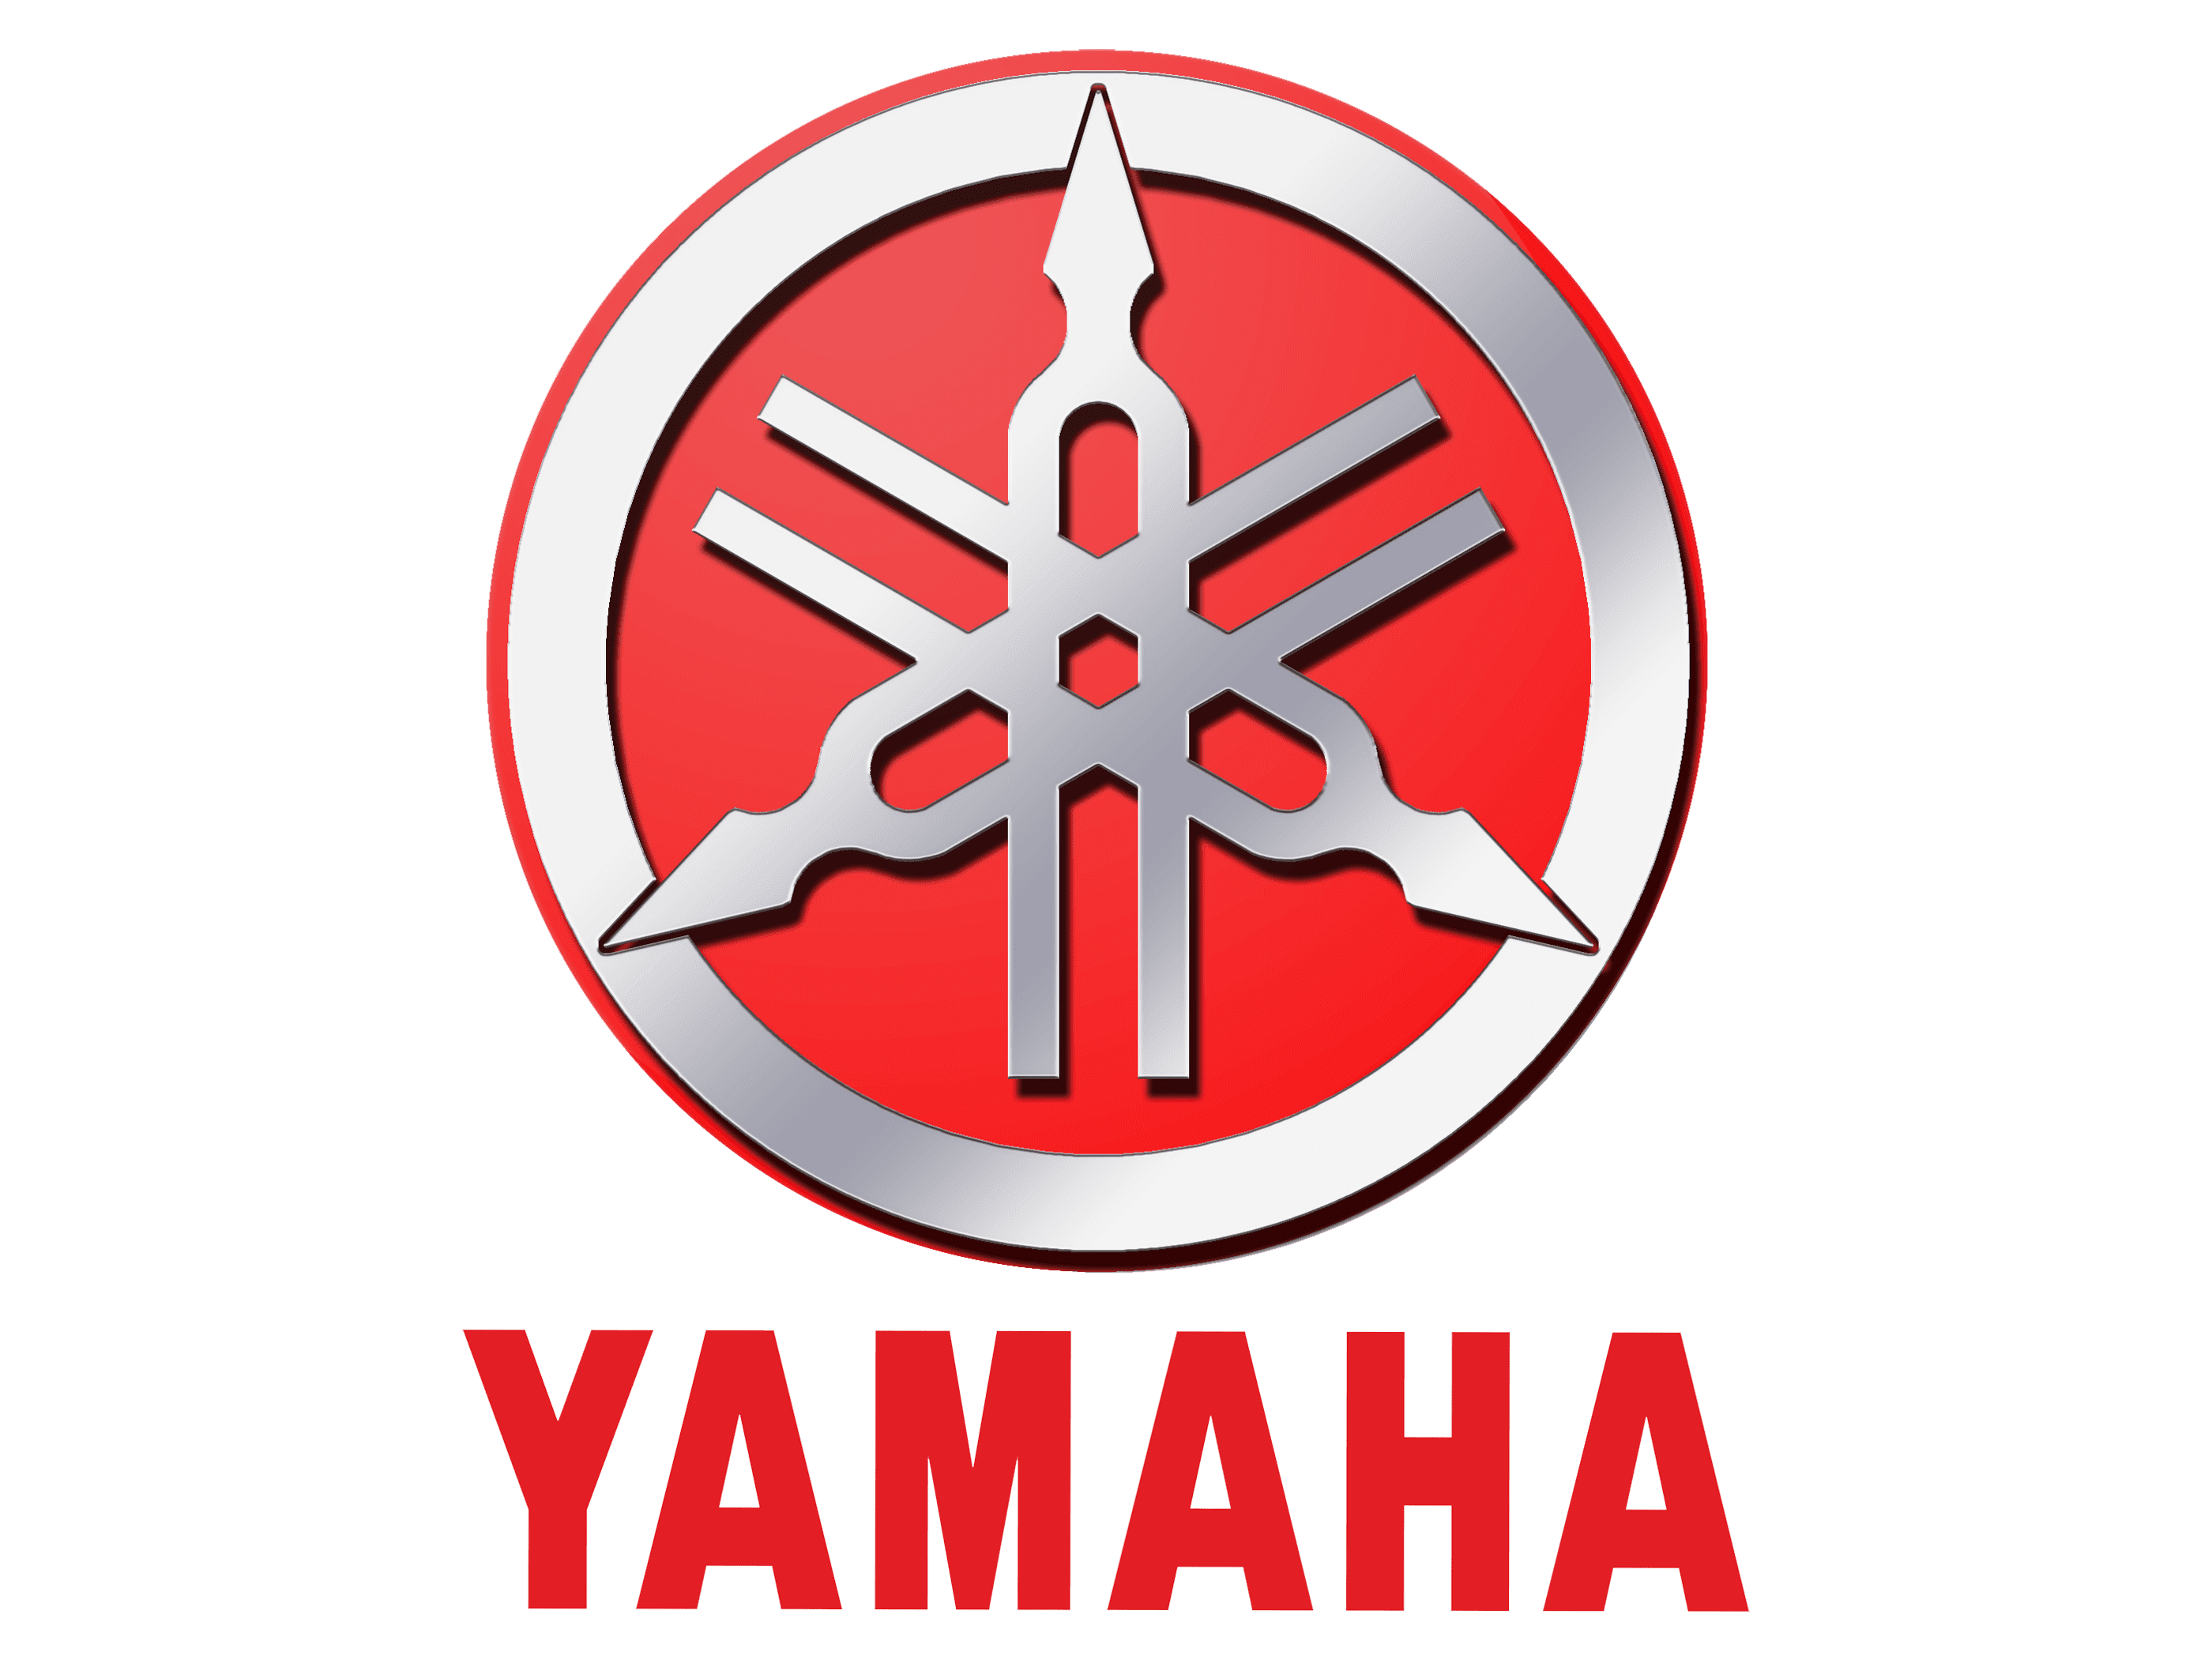 Yamaha Logo Meaning And History Yamaha Symbol